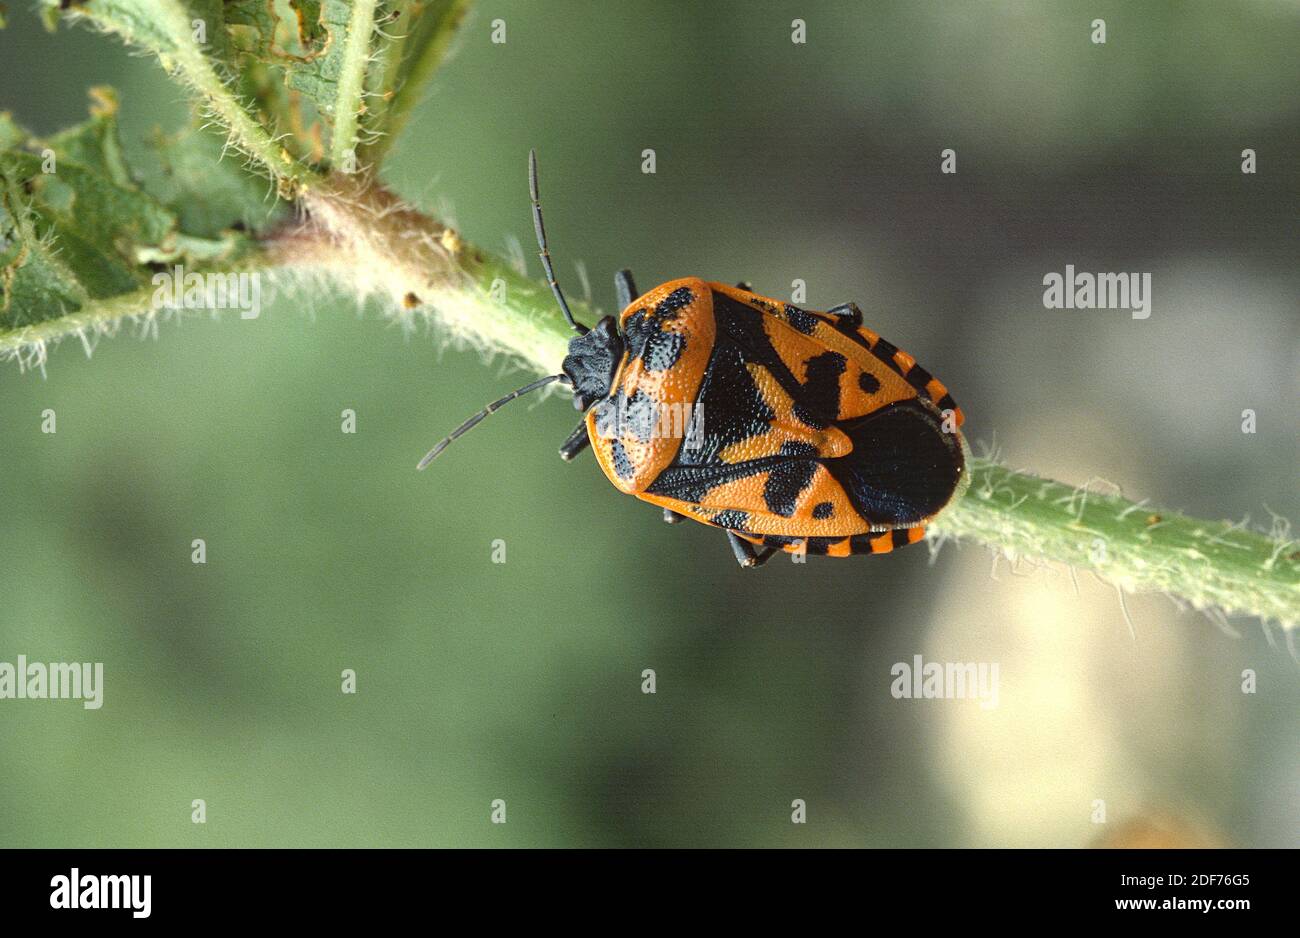 El insecto escudo (Eurydema ventralis) es un insecto hemiptera nativo de Europa. Foto de stock